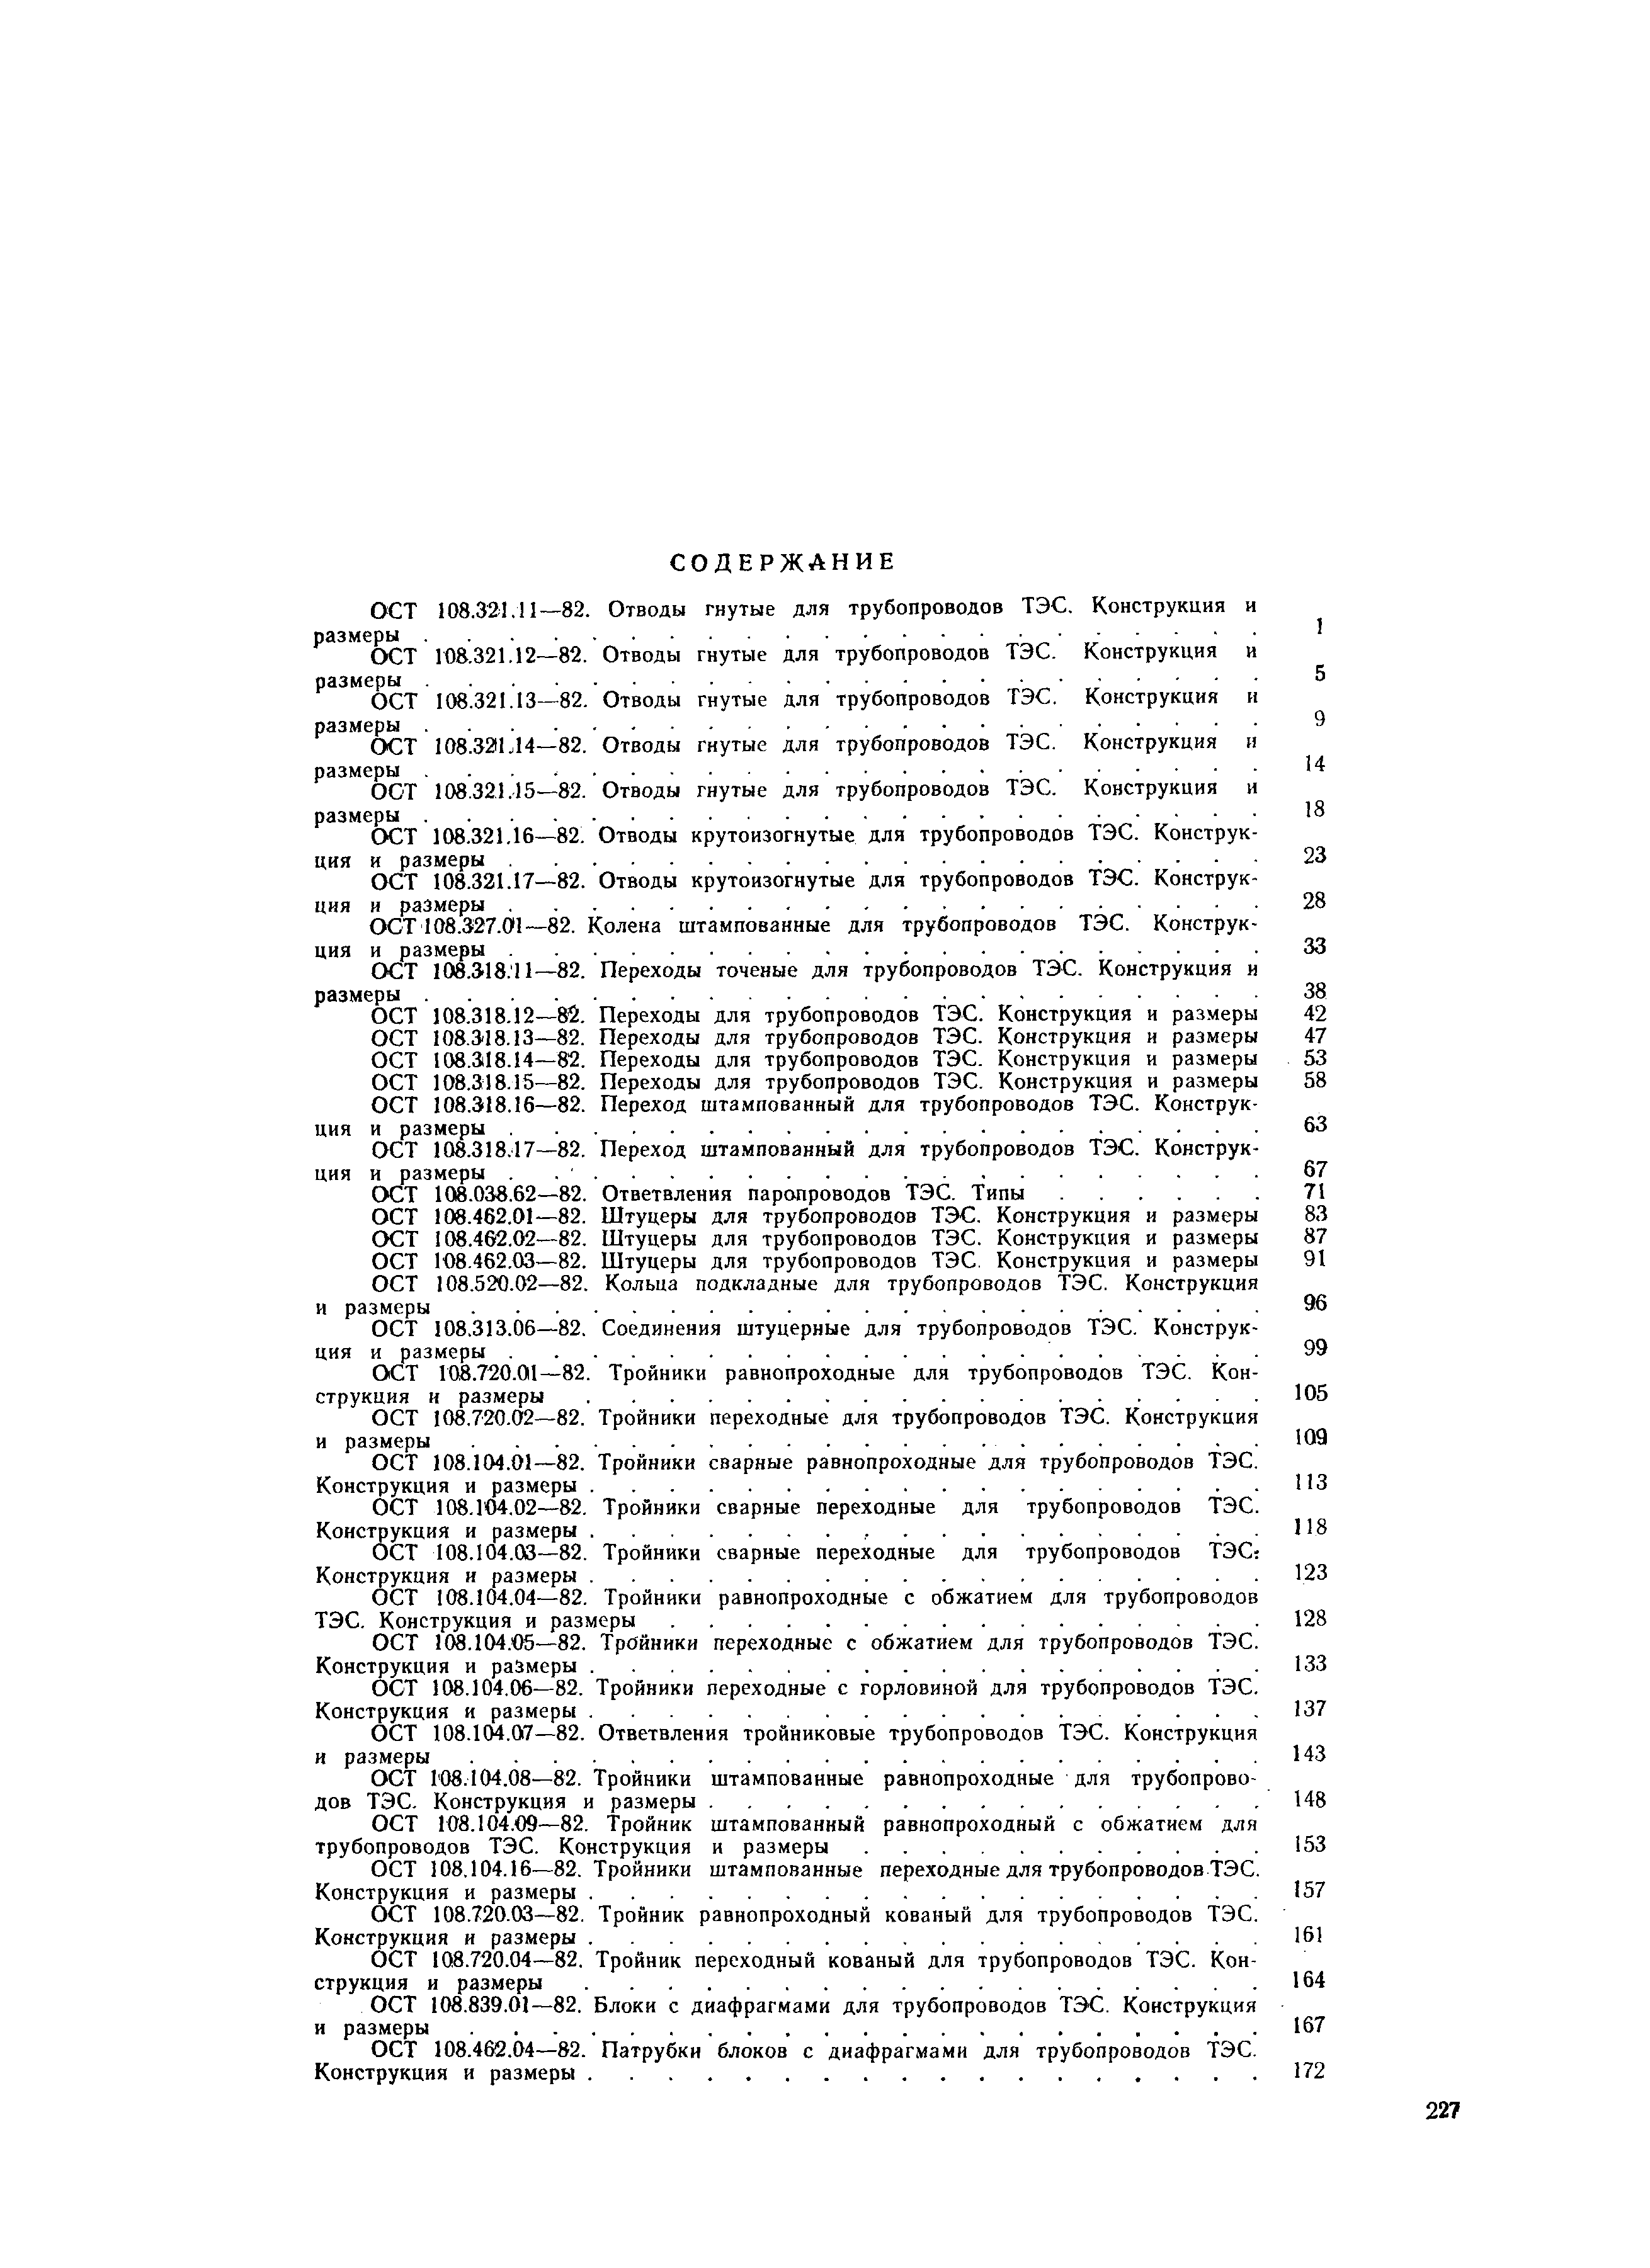 ОСТ 108.720.04-82